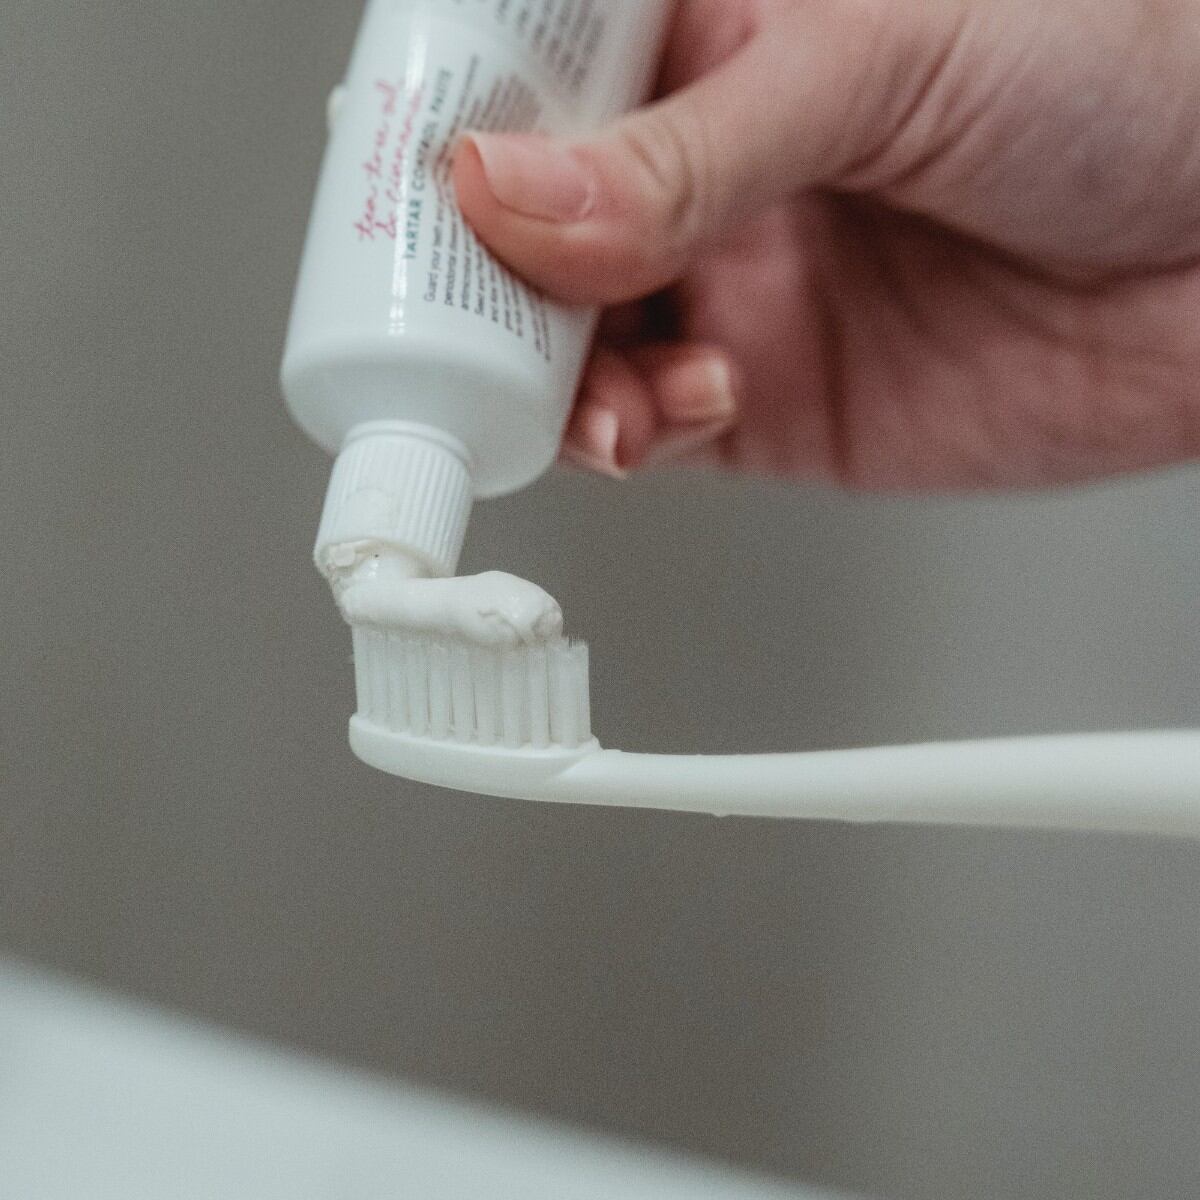 El truco con pasta de dientes para quitar manchas de rotulador